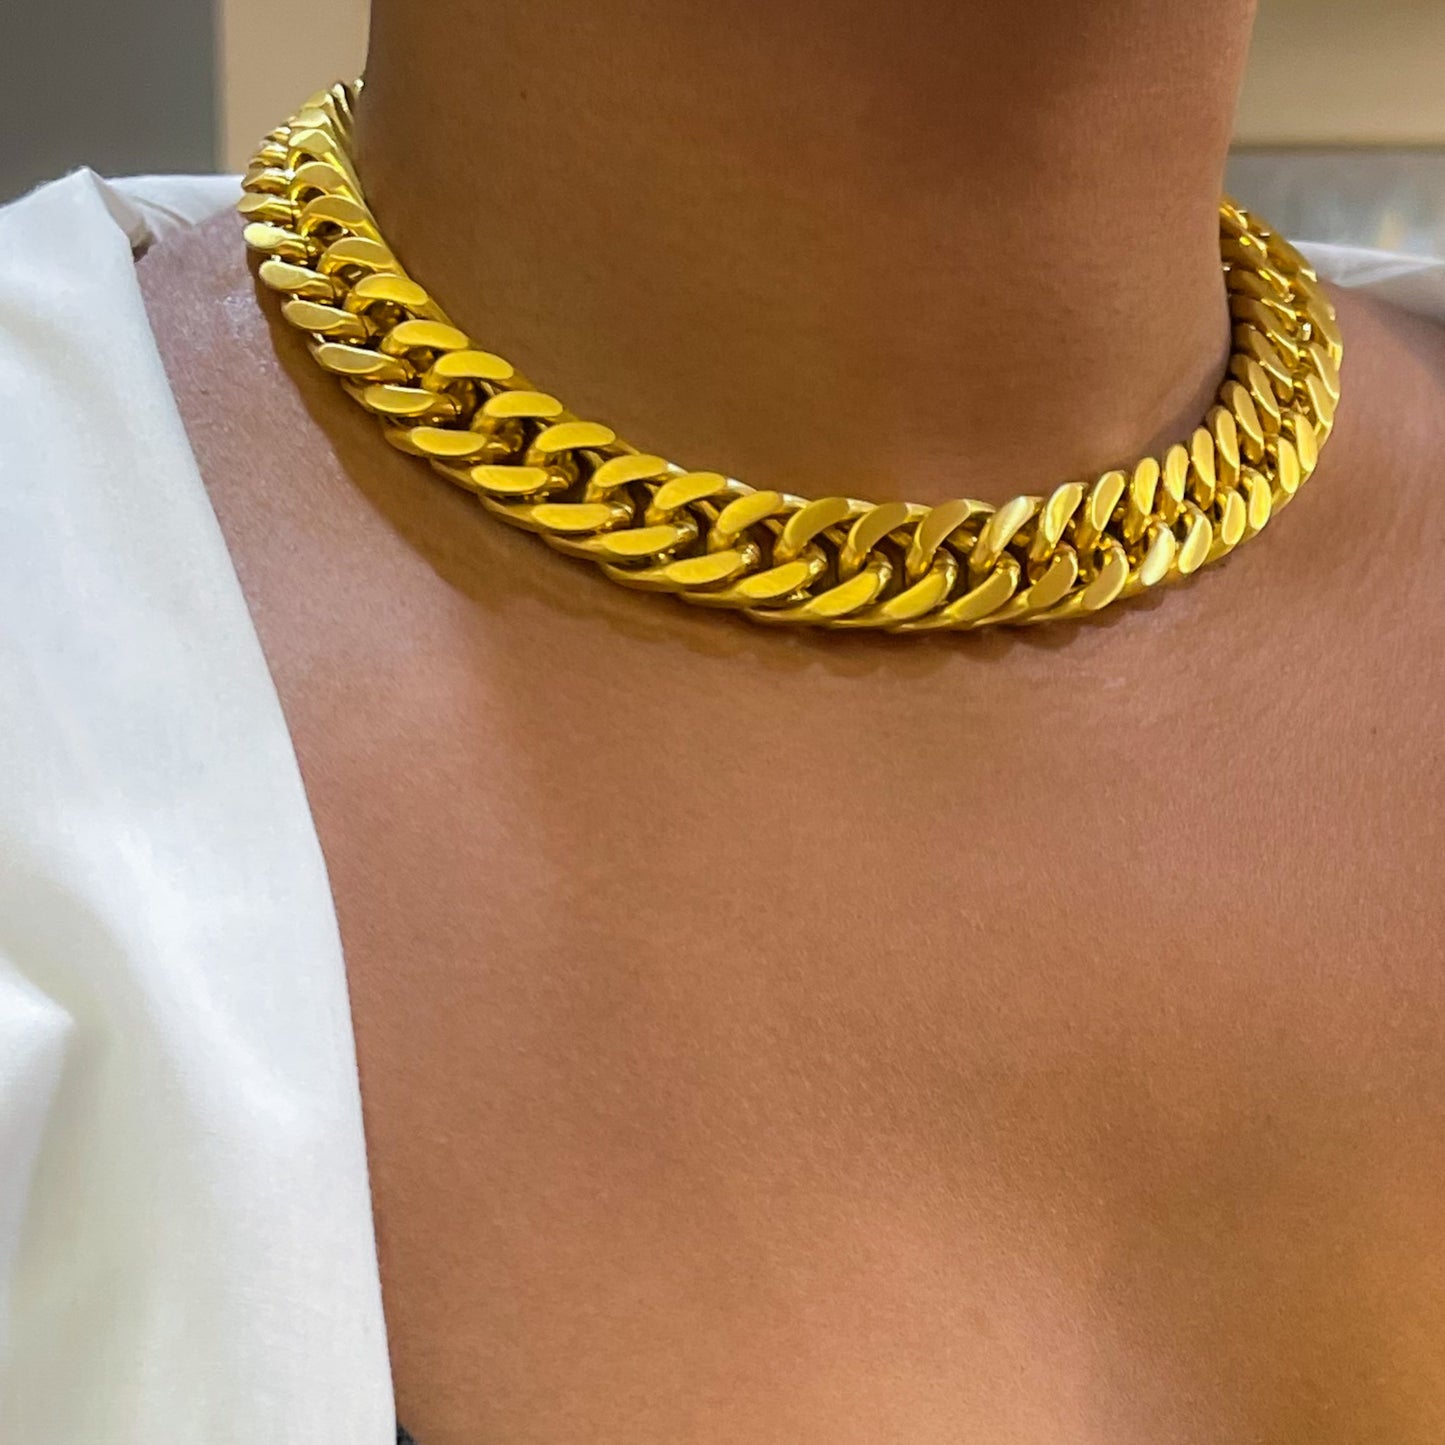 Premier Chain necklace